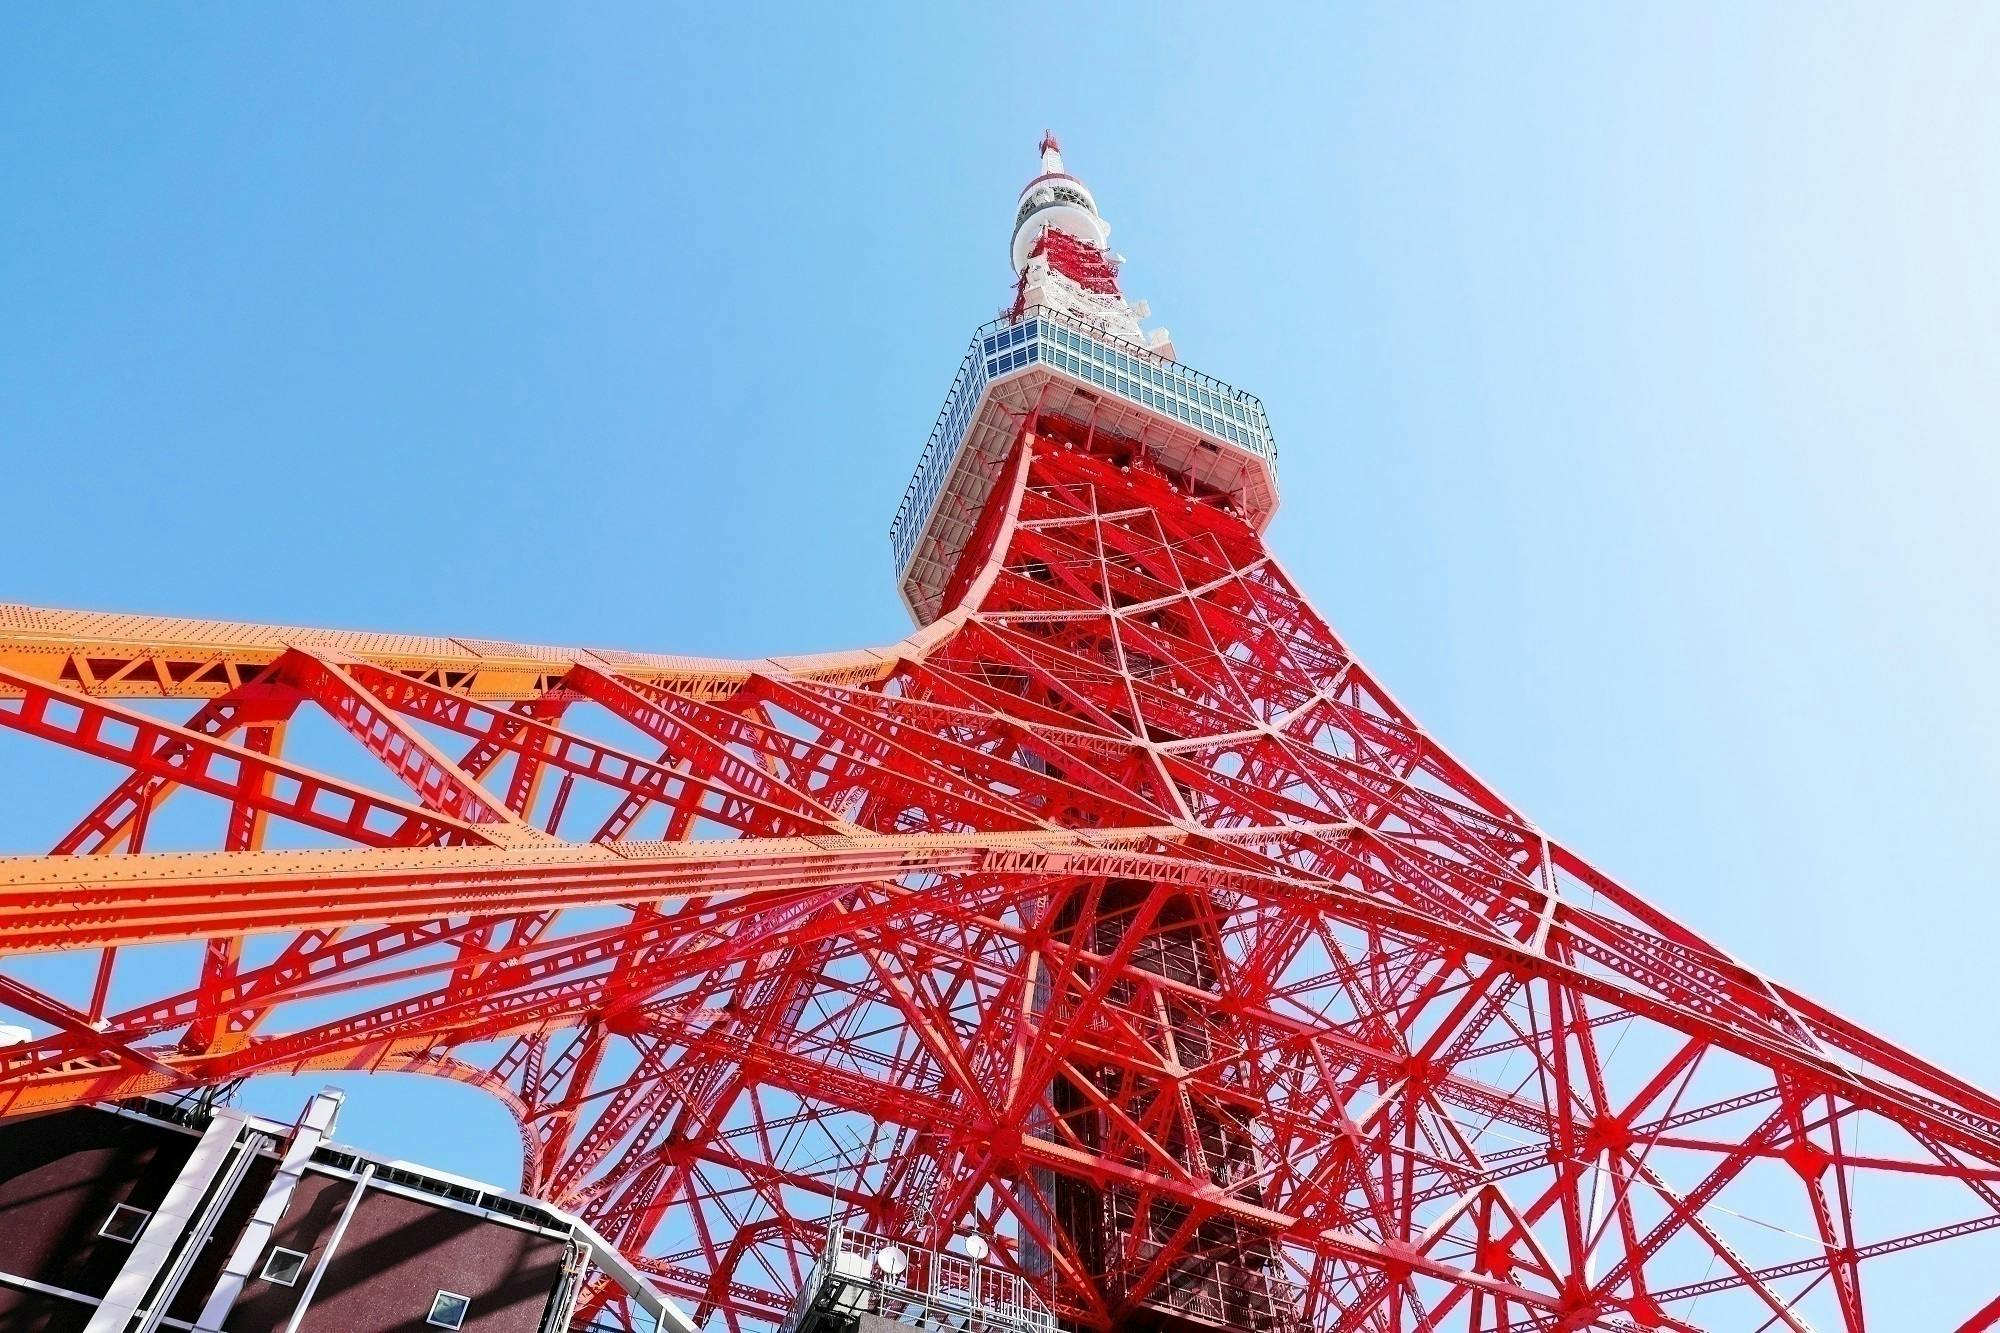 上を向いて歩こう！東京タワーのライトアップが、皆さんに元気を与えられますように。 CAMPFIRE (キャンプファイヤー)